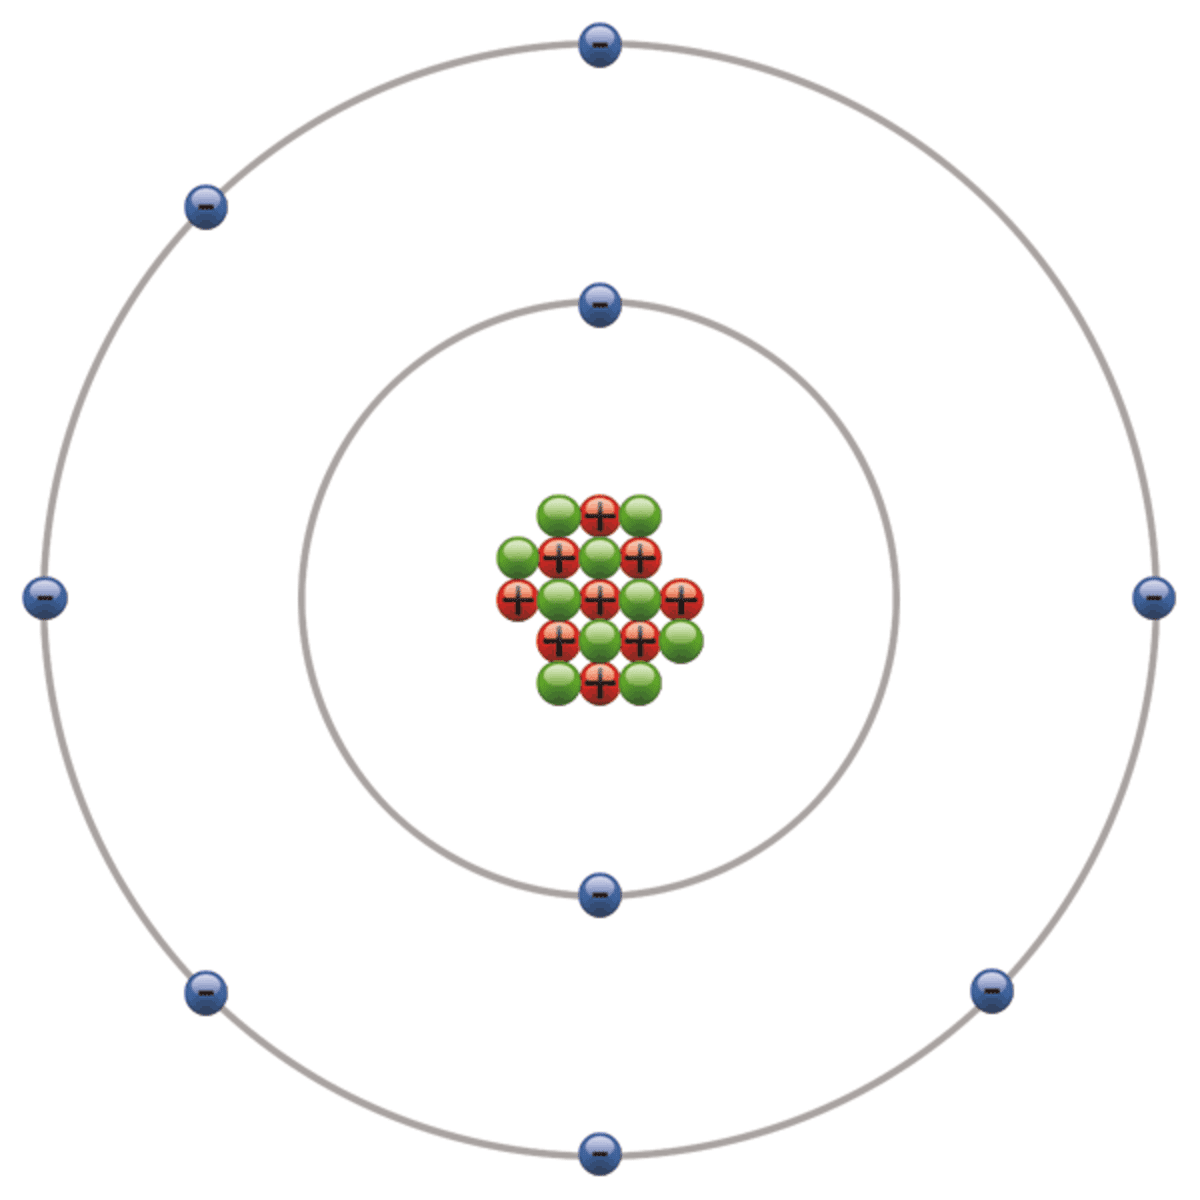 fluorine bohr model